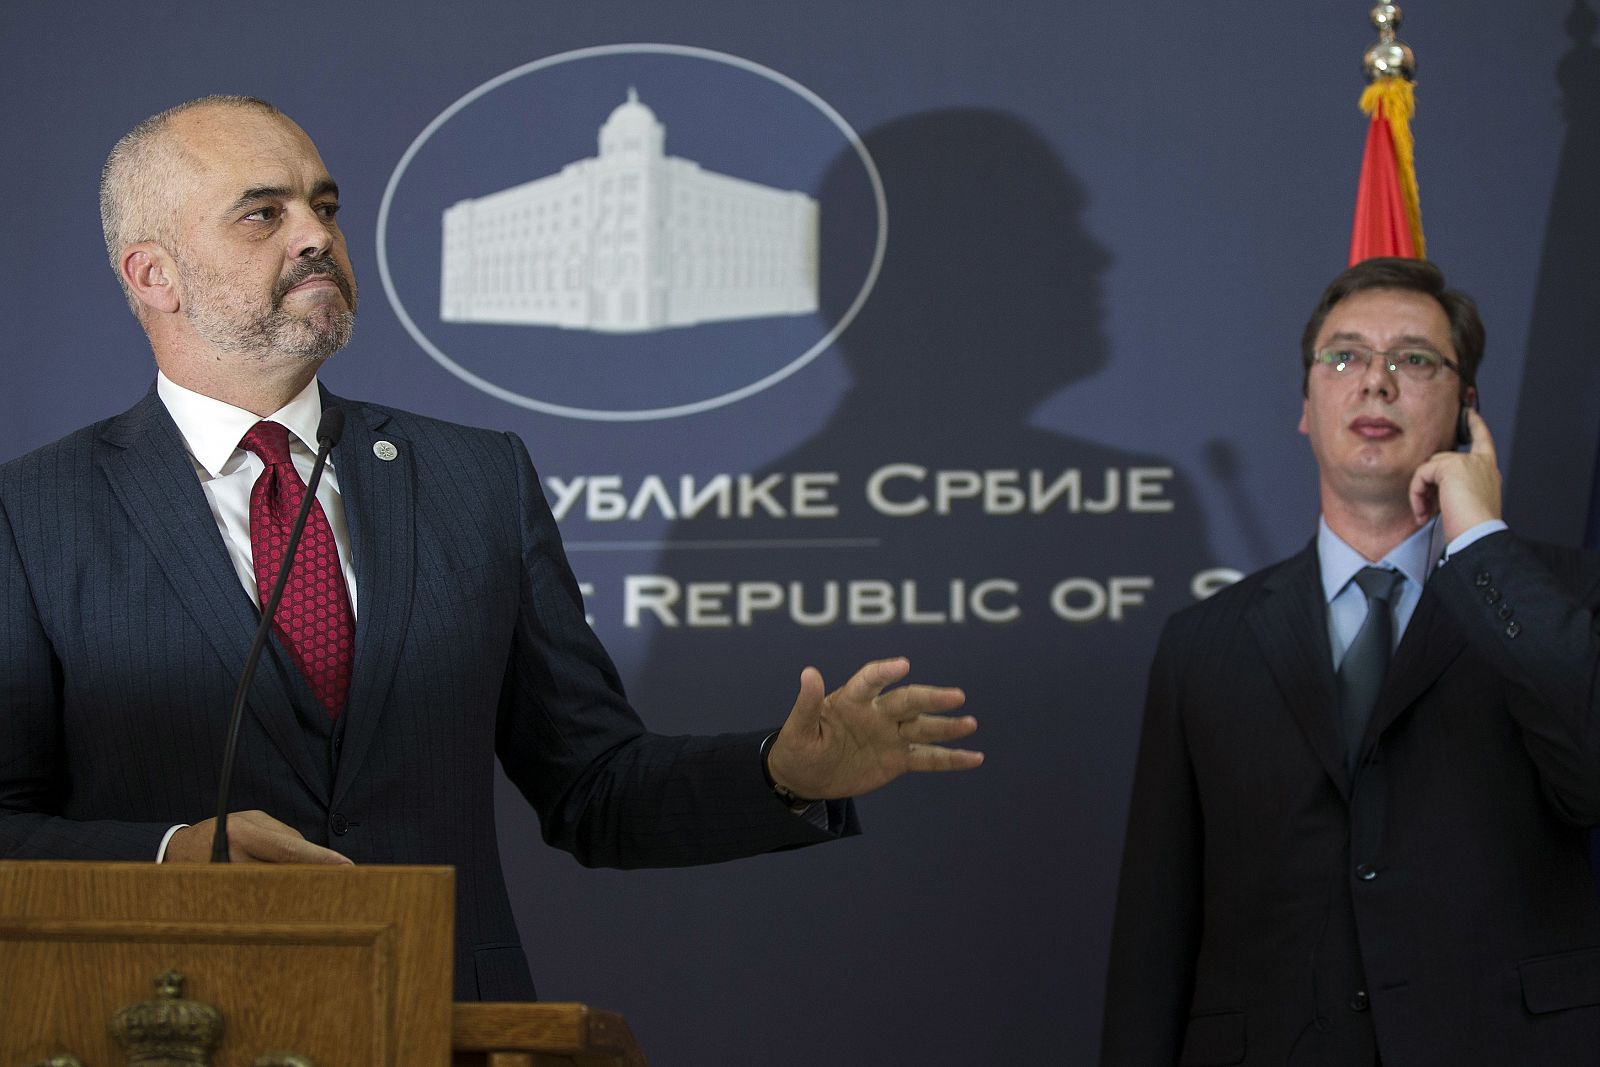 Los mandatarios albanés y serbio, Rama (izquierda) y Vucic, en la rueda de prensa.